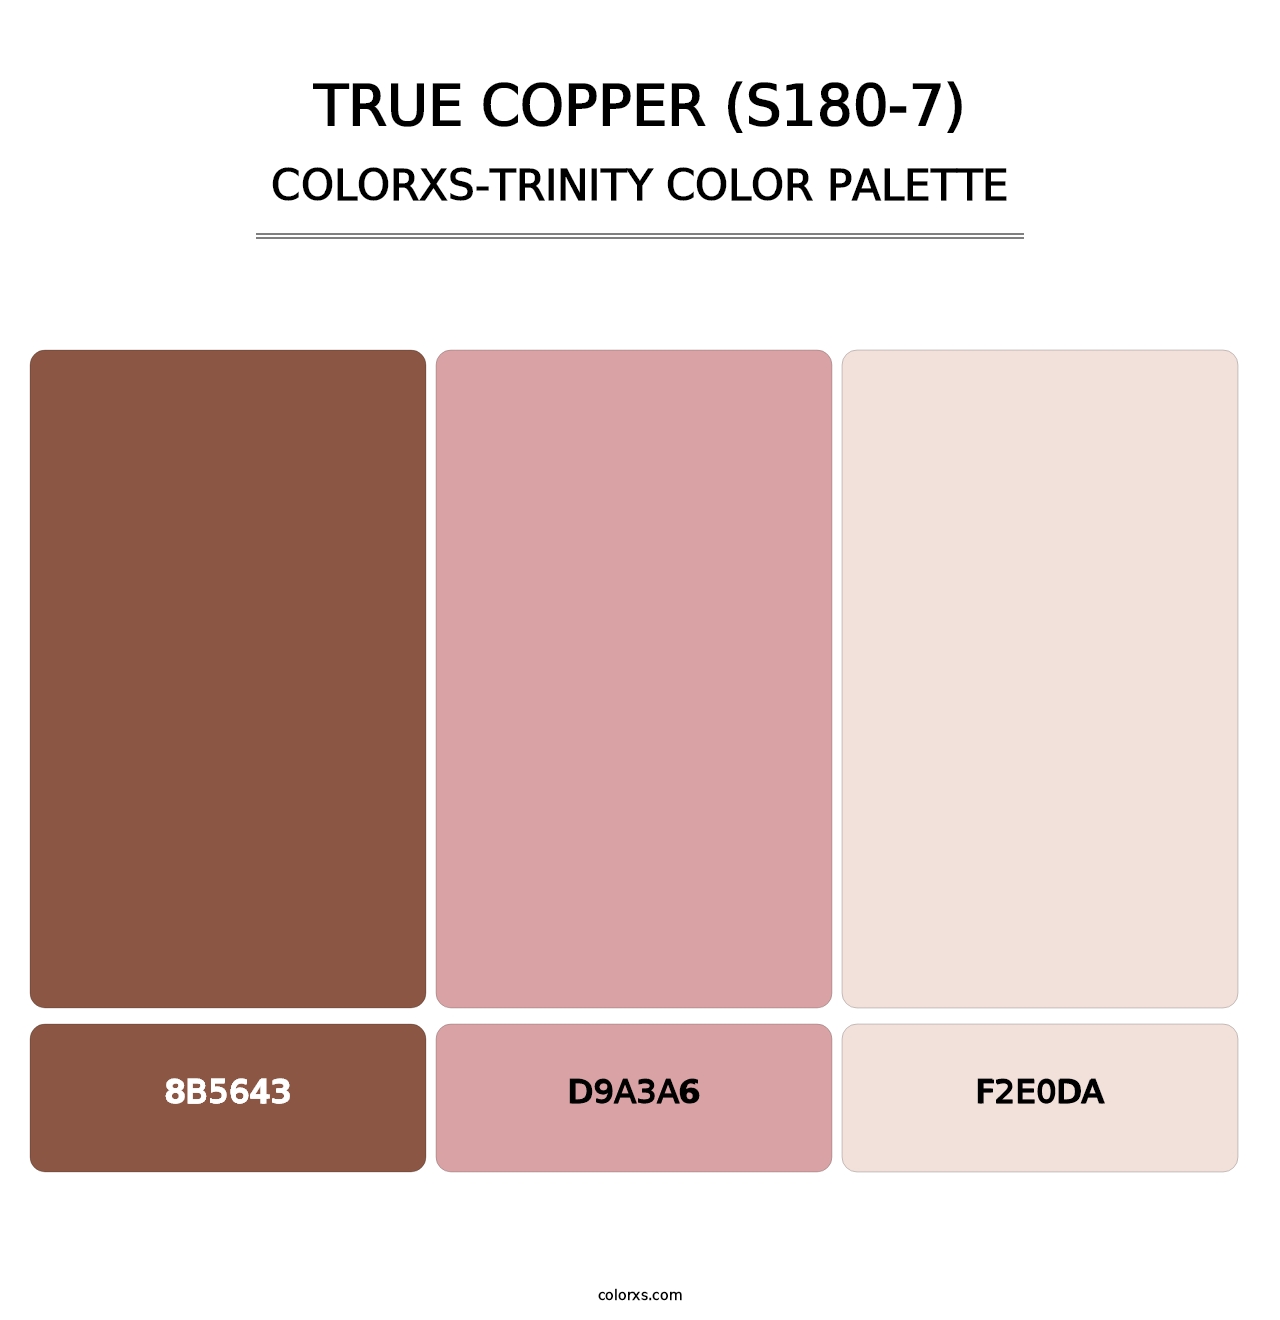 True Copper (S180-7) - Colorxs Trinity Palette